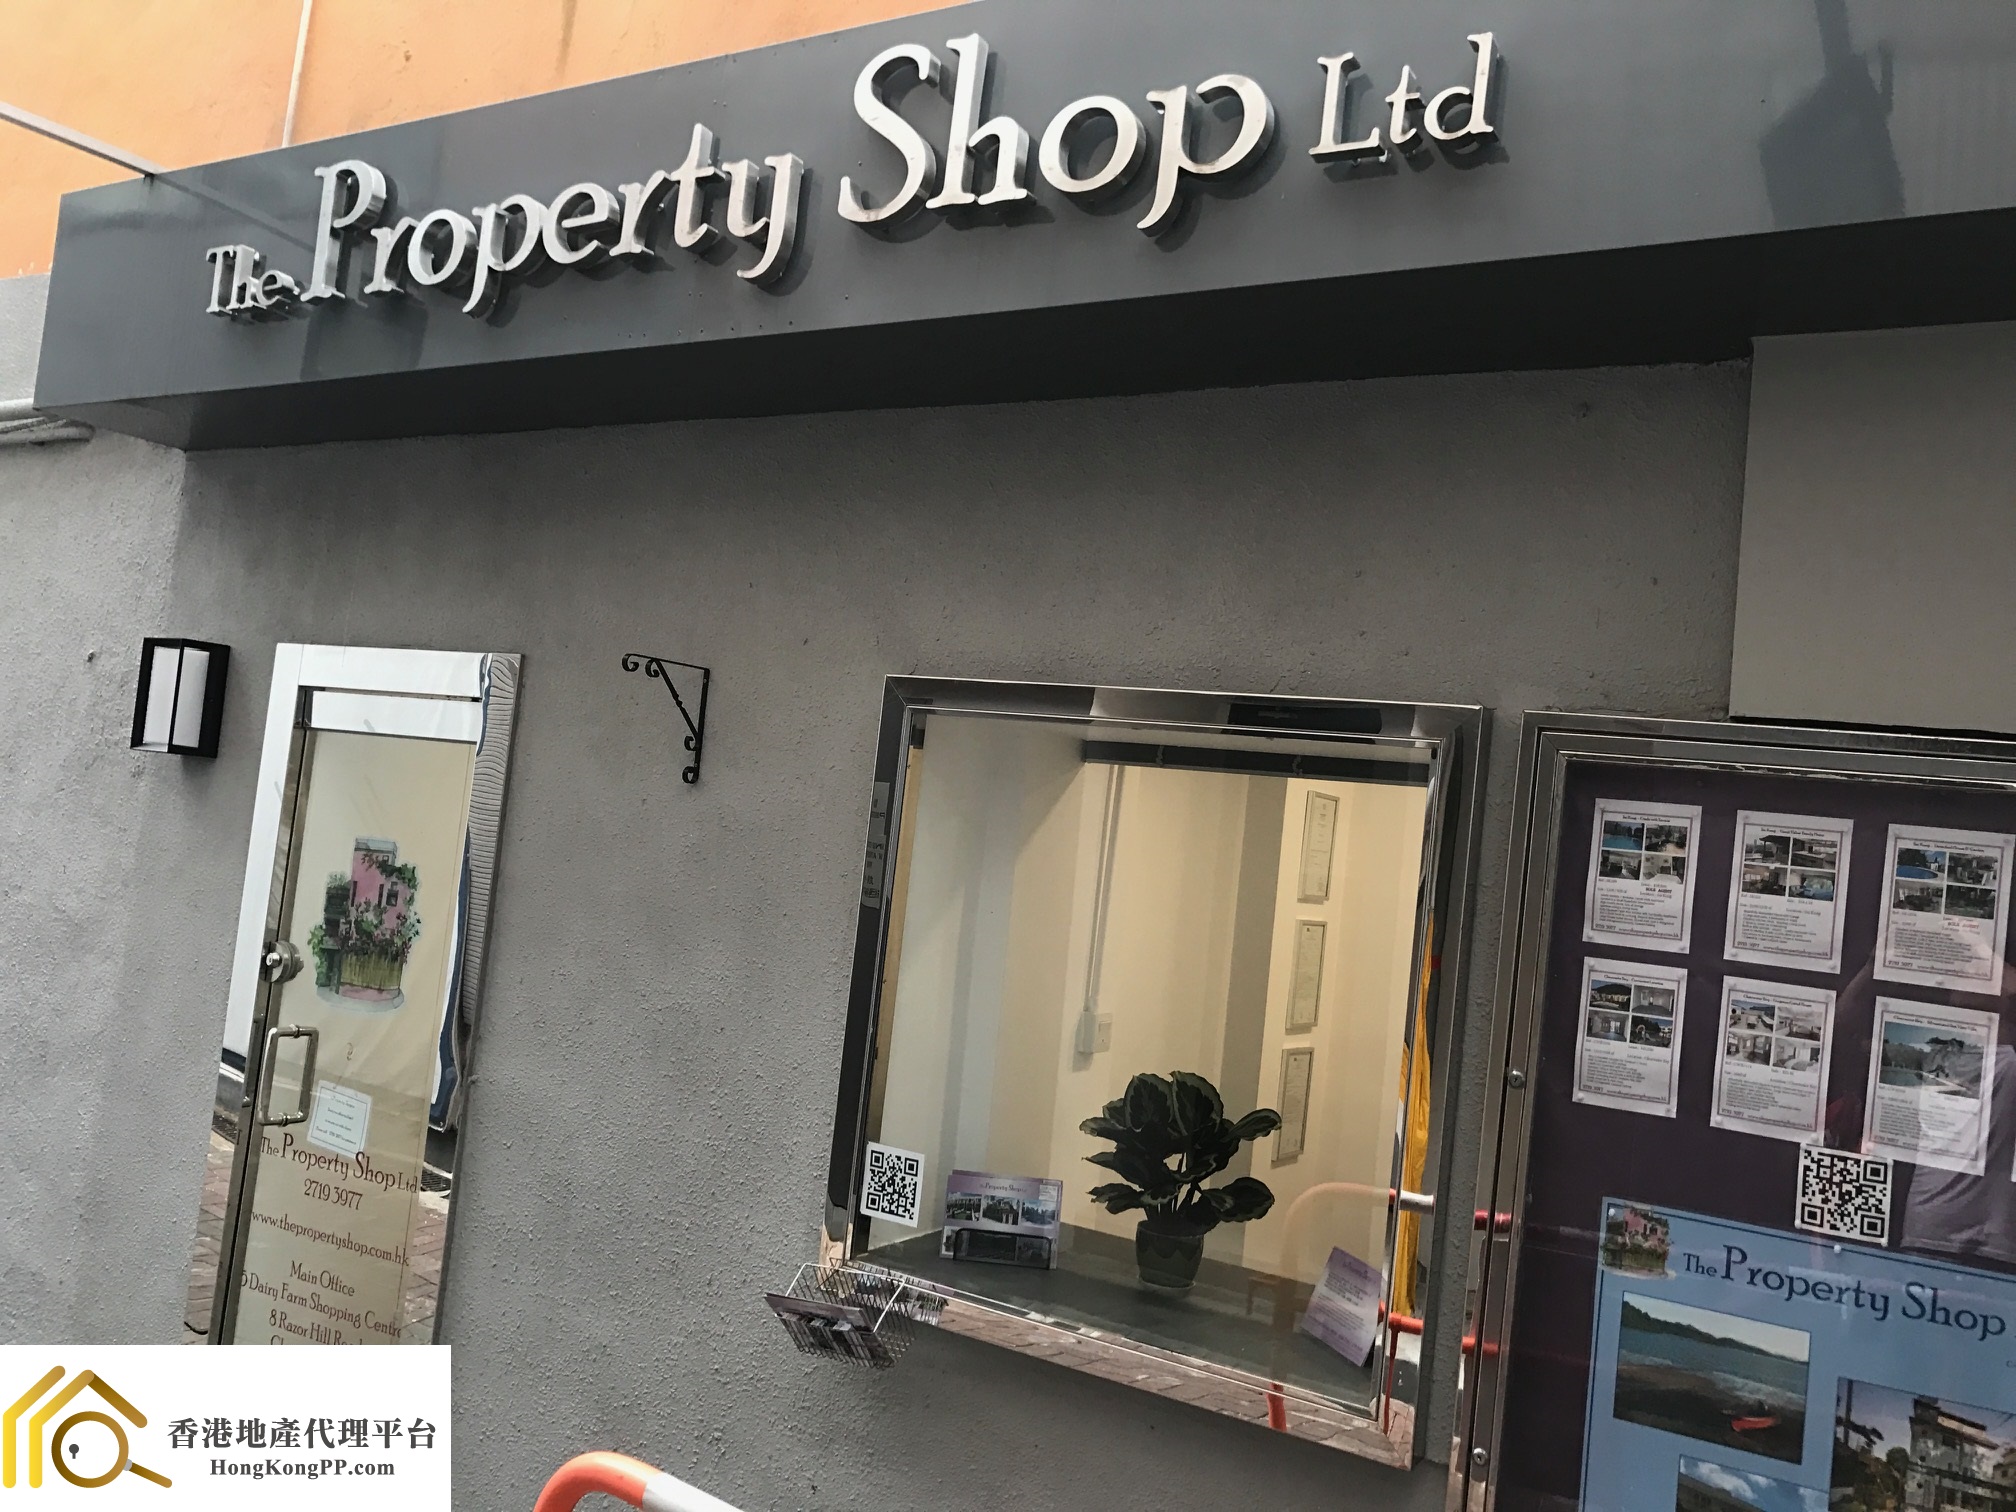 村屋地產代理: The Property Shop (Sai Kung)